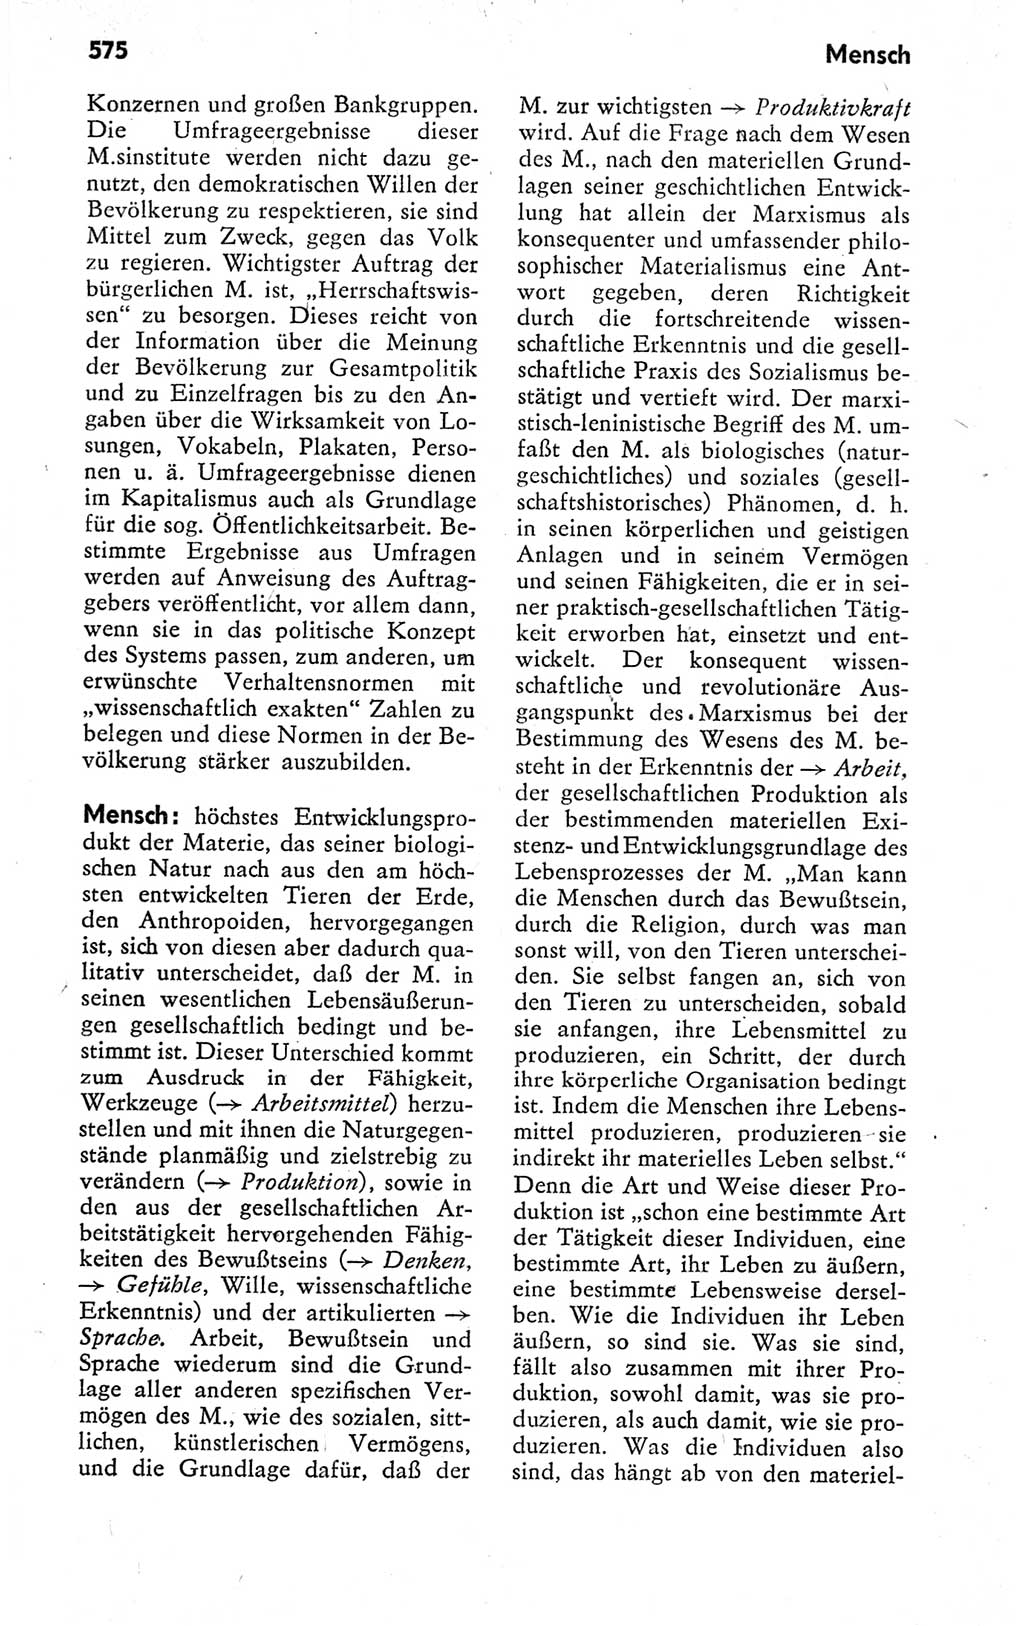 Kleines politisches Wörterbuch [Deutsche Demokratische Republik (DDR)] 1978, Seite 575 (Kl. pol. Wb. DDR 1978, S. 575)